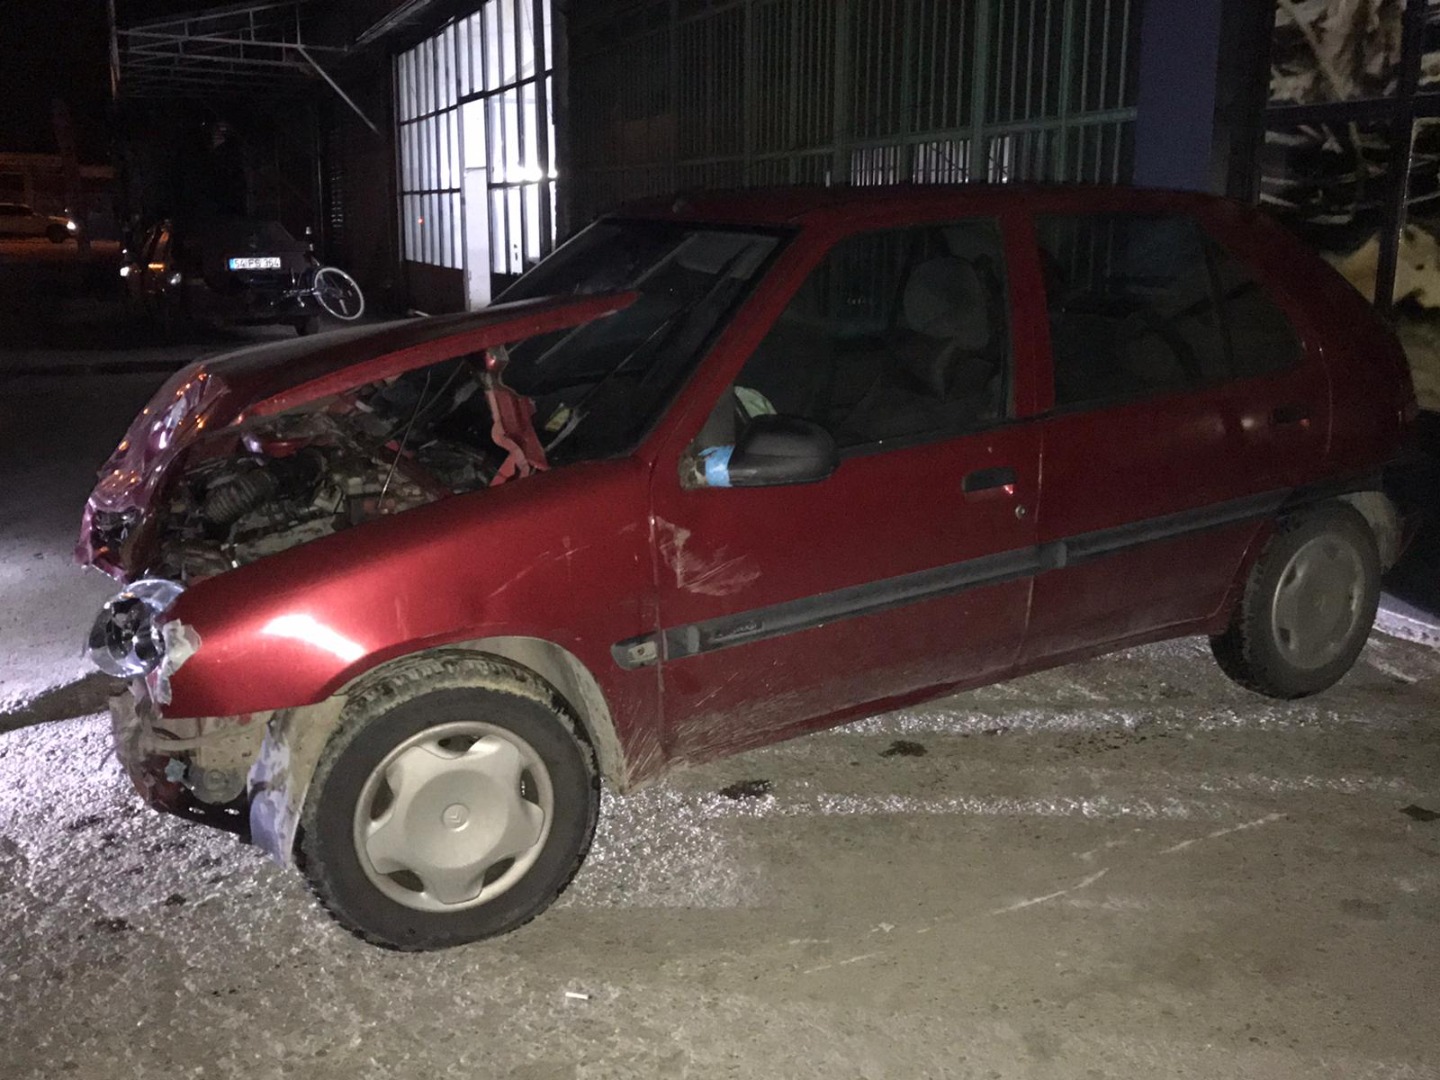 Sakarya'da feci kaza: 1 ölü, 2 yaralı